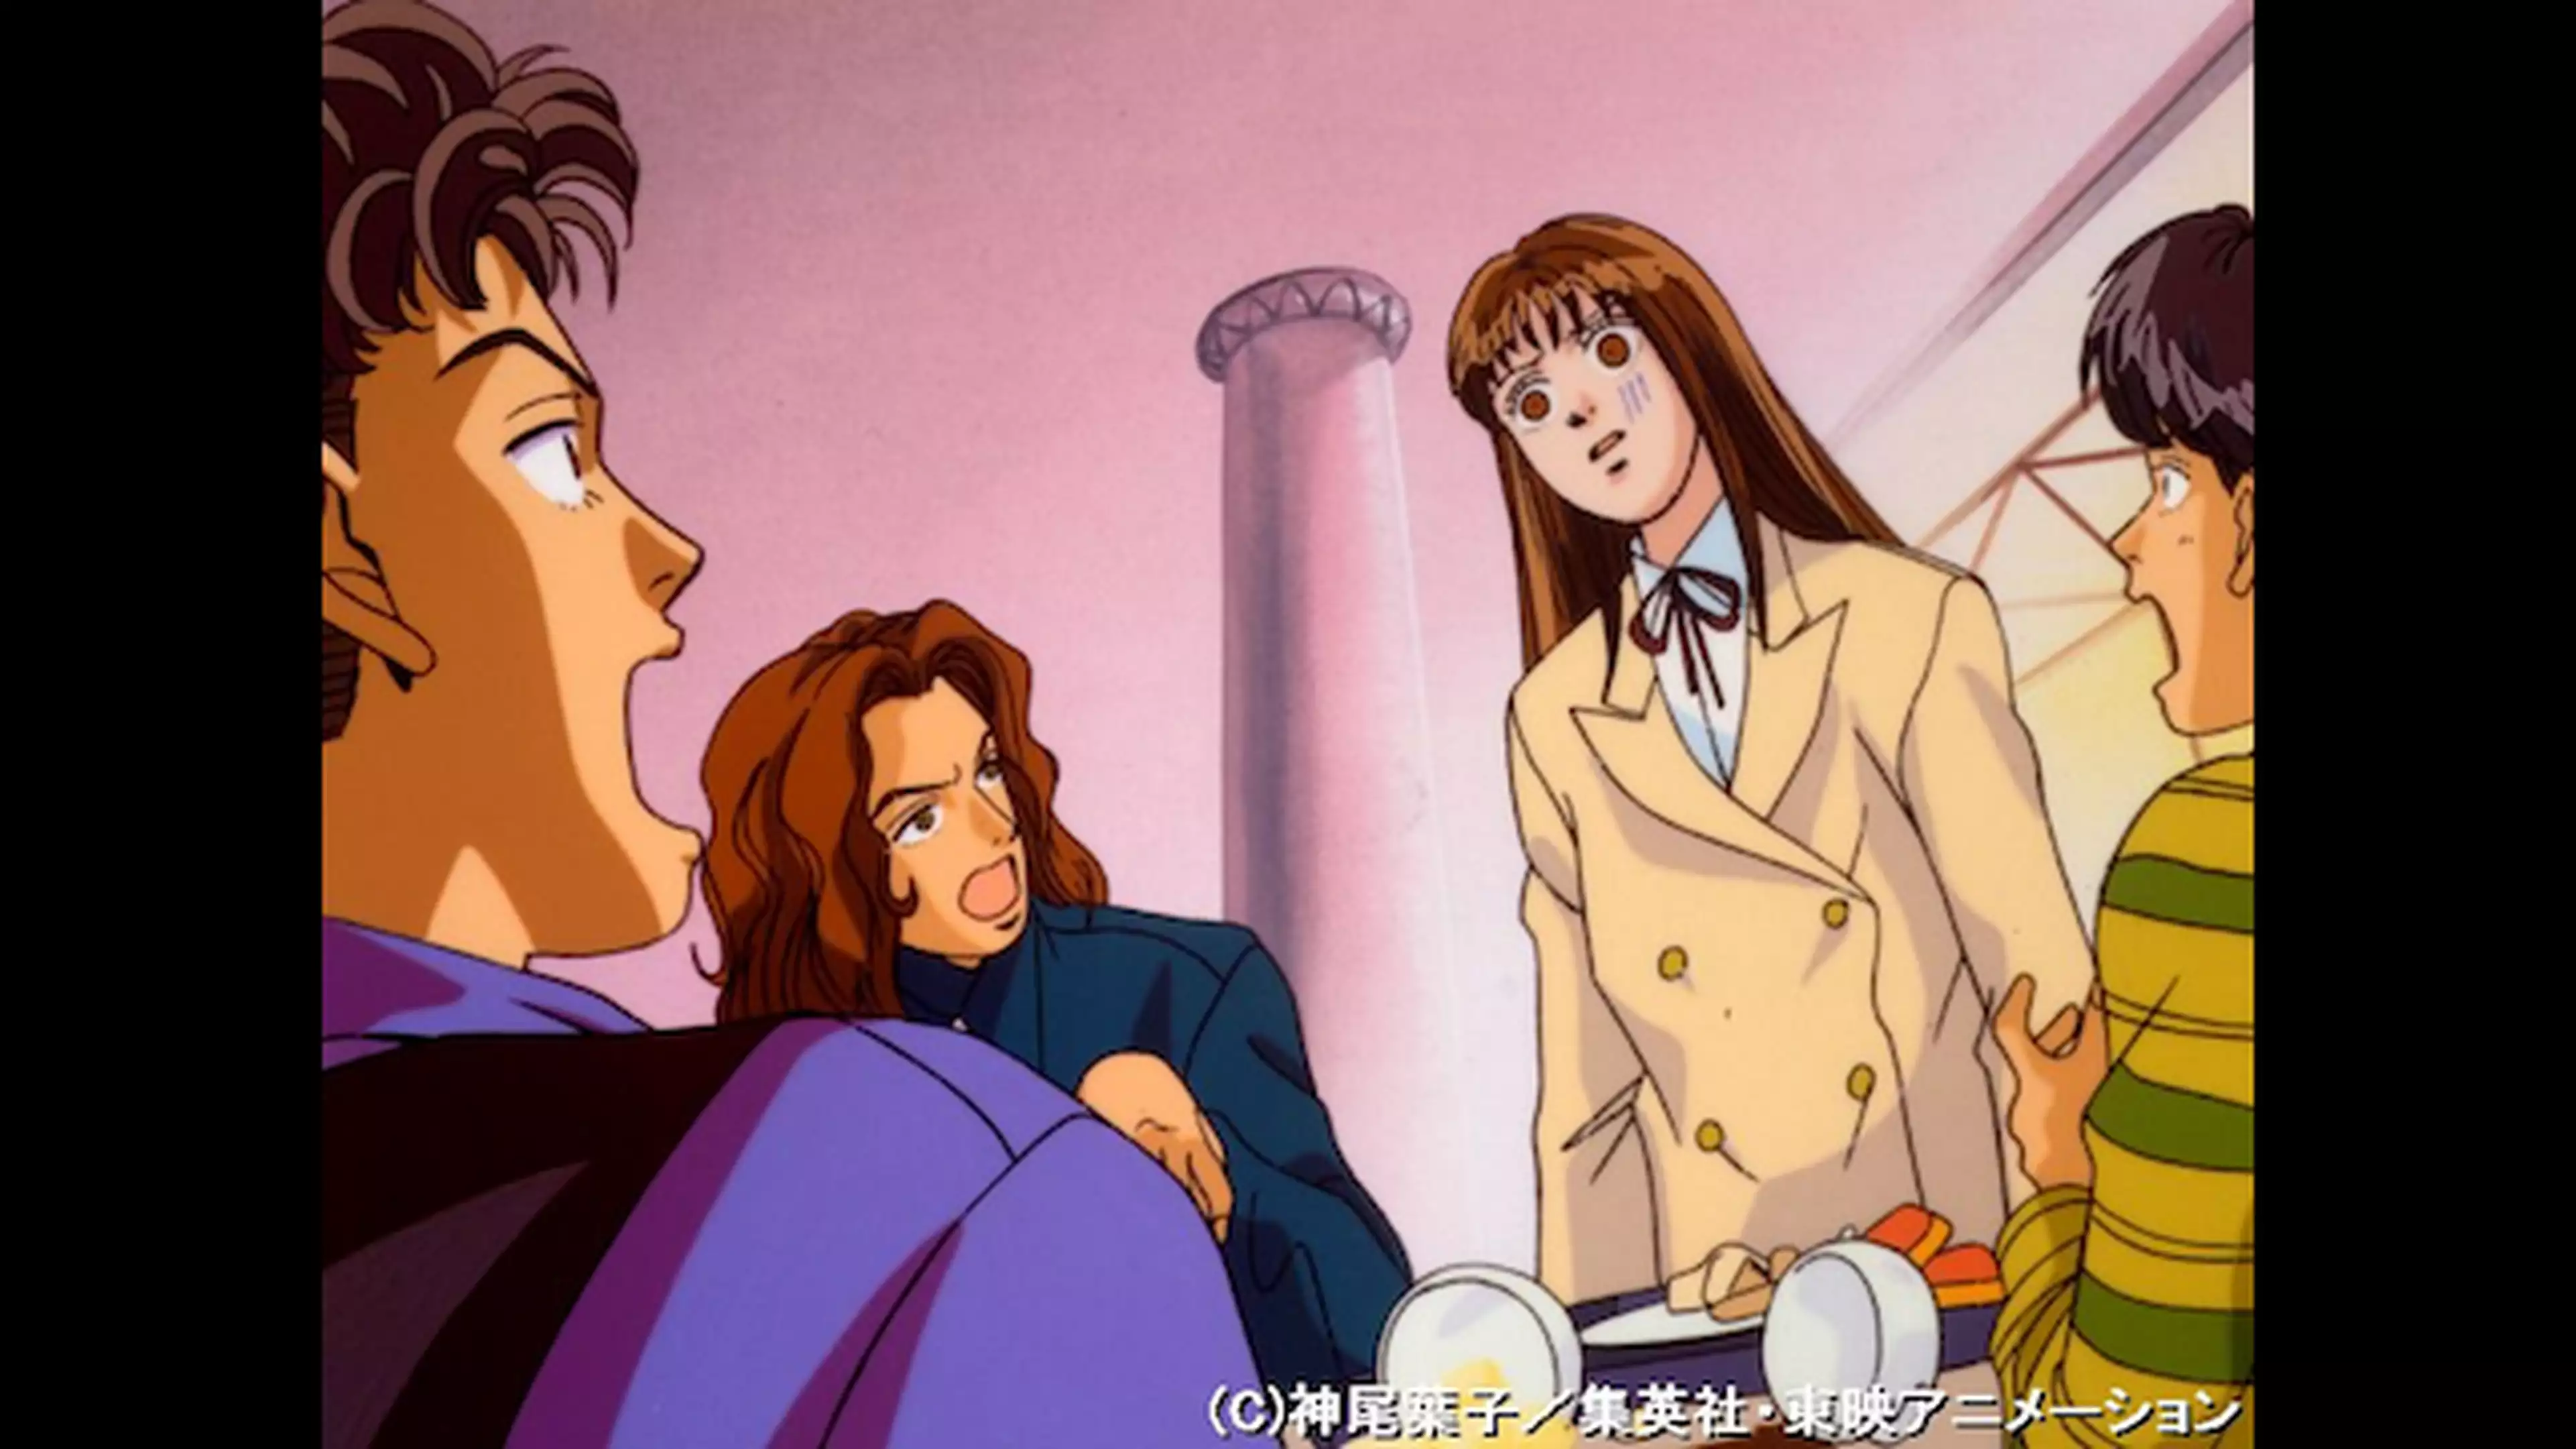 花より男子 第13話 はやすぎる恋の展開 アニメ 1996年 の動画視聴 あらすじ U Next